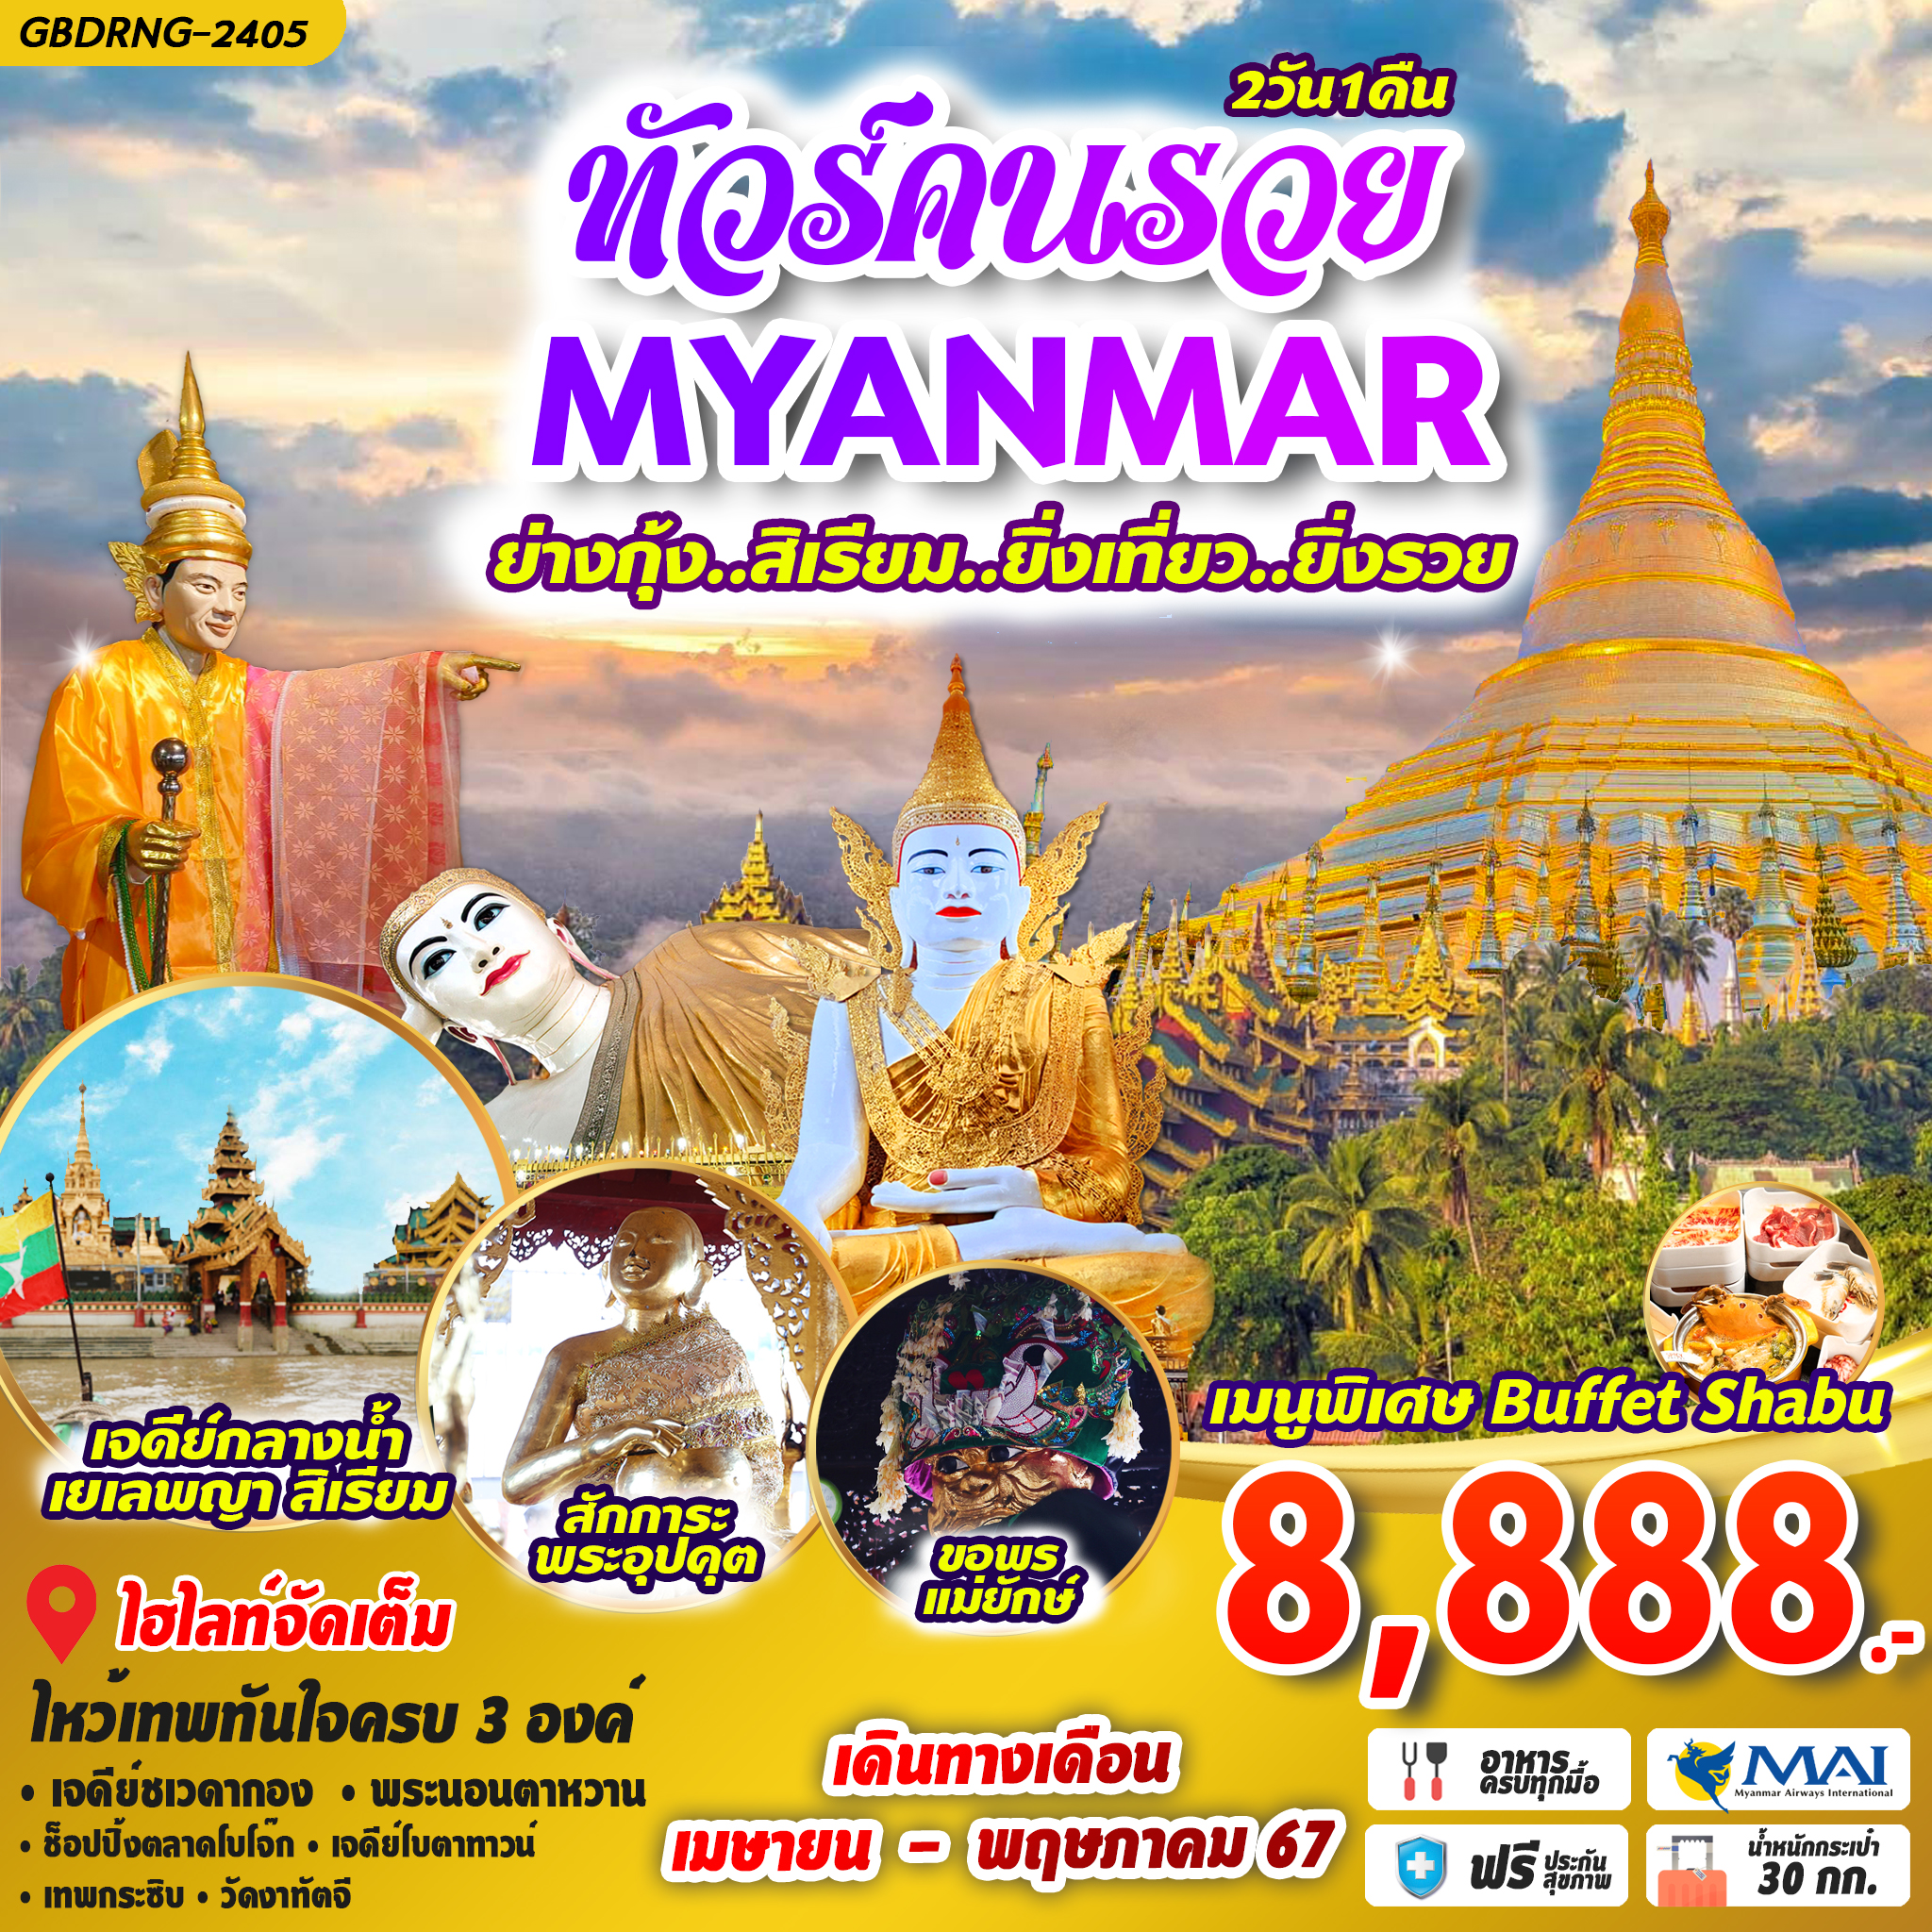 ทัวร์คนรวย พม่า ย่างกุ้ง สิเรียม 2D1N by 8M